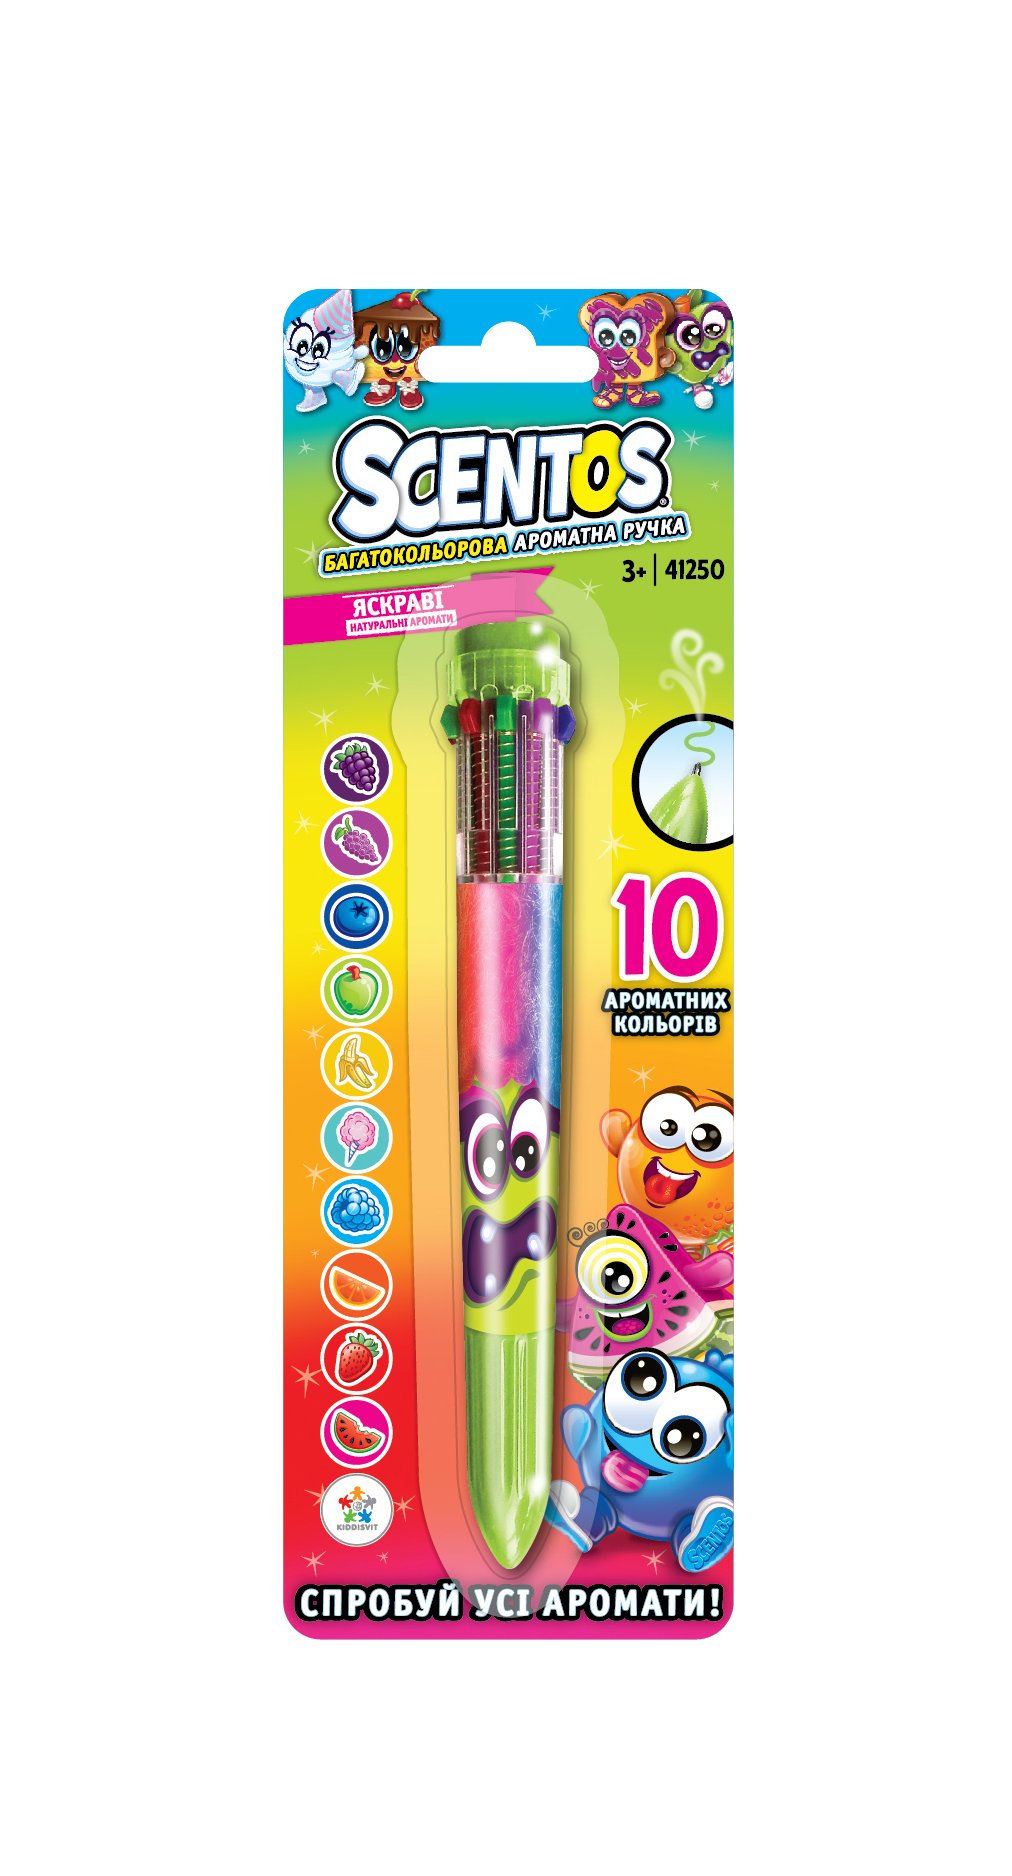 Многоцветная ароматная шариковая ручка Scentos Волшебное настроение, 10 цветов, зеленый (41250) - фото 1